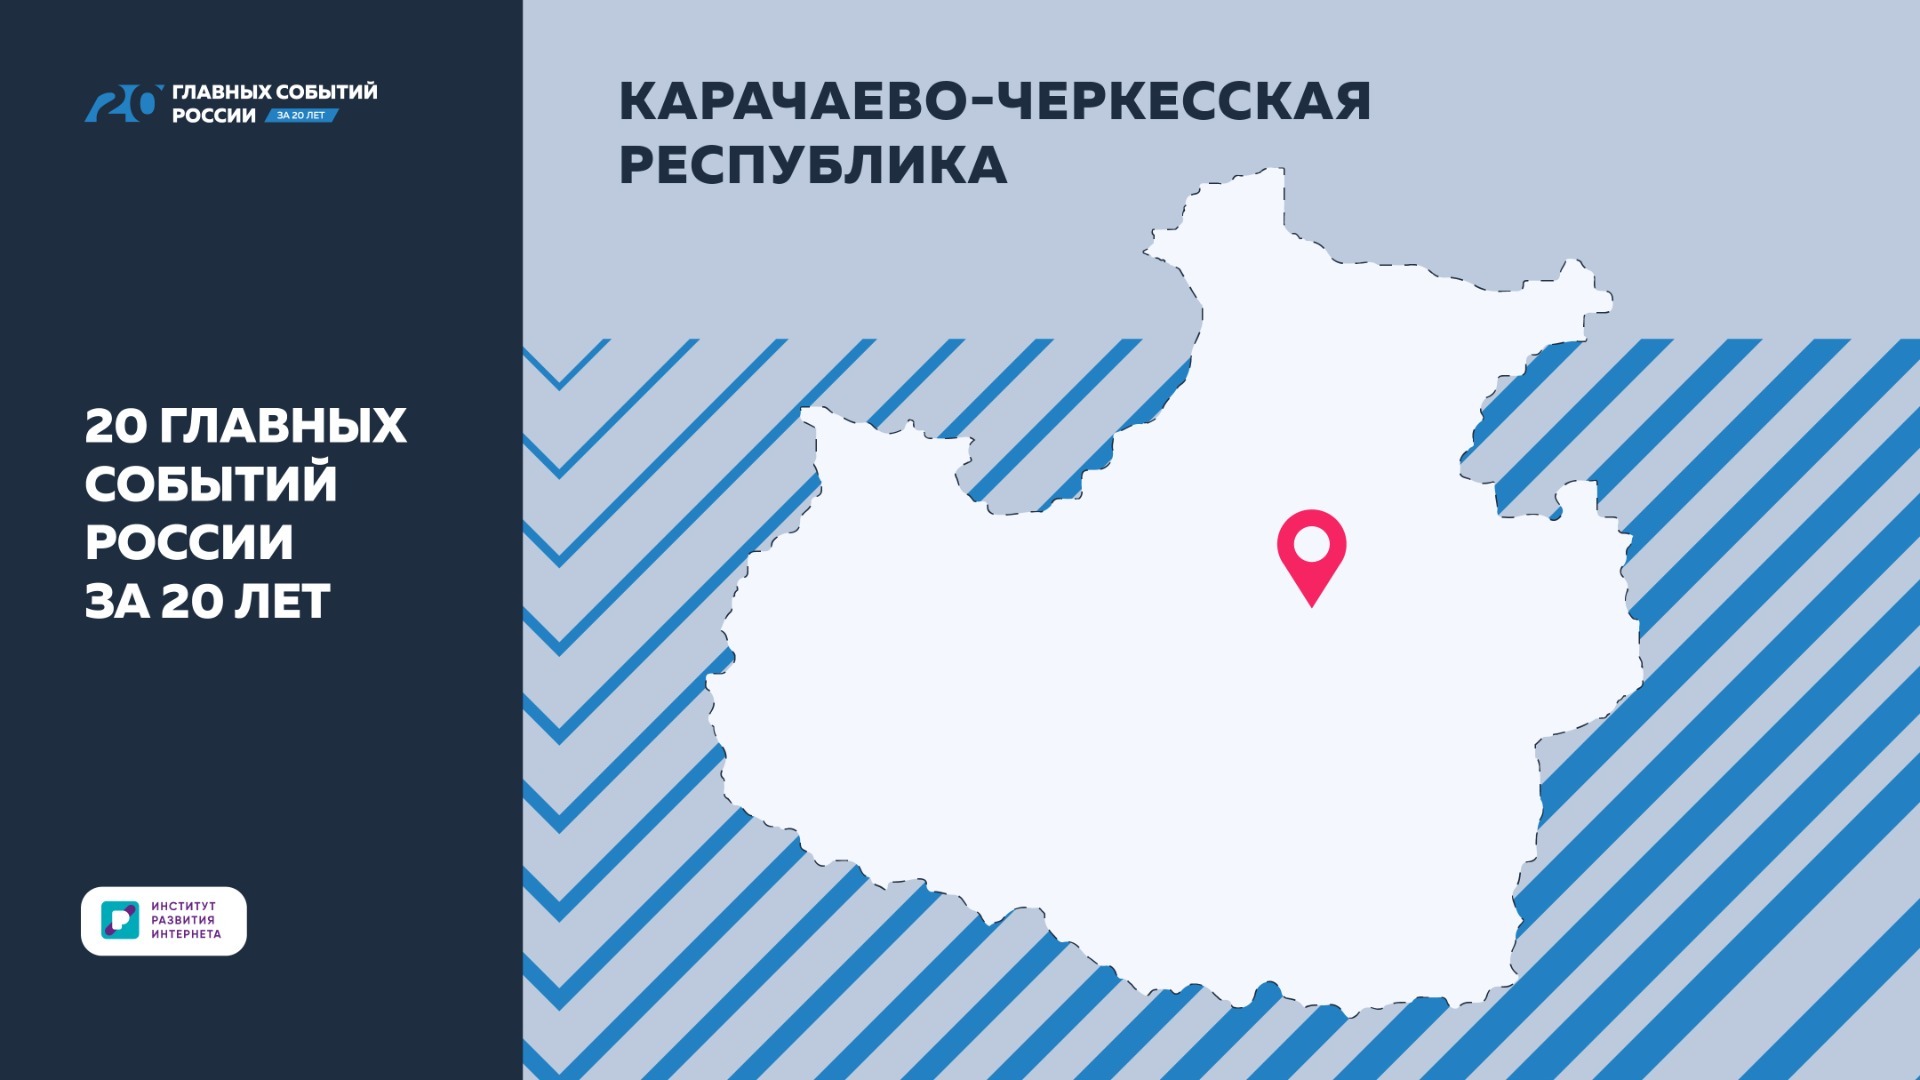 Названы главные изменения в Республике Карачаево-Черкесия за 20 лет